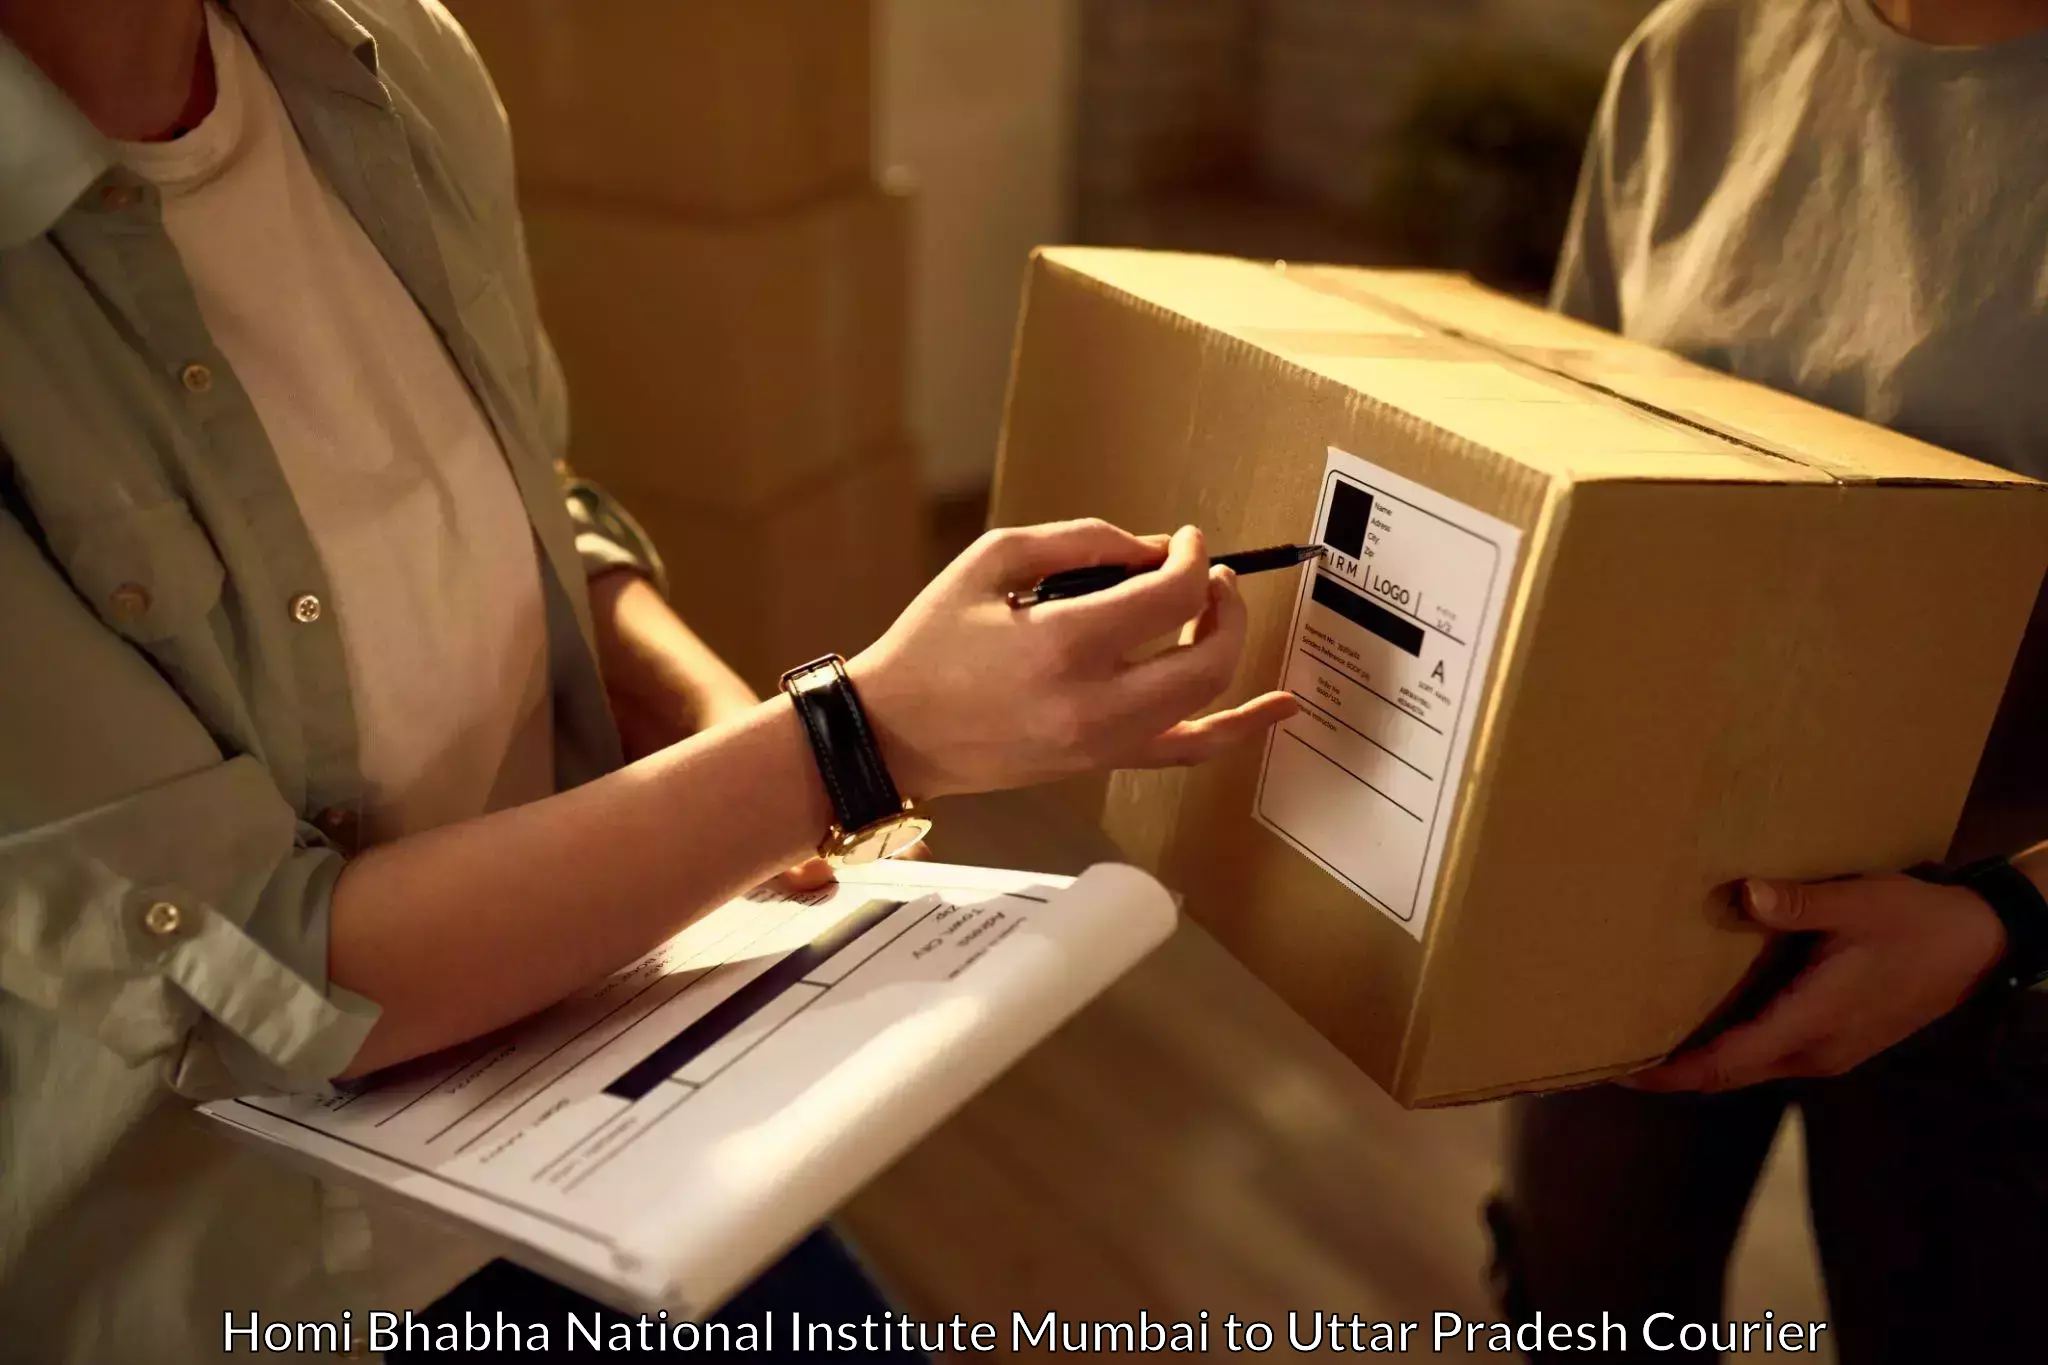 Smart logistics solutions Homi Bhabha National Institute Mumbai to Uttar Pradesh